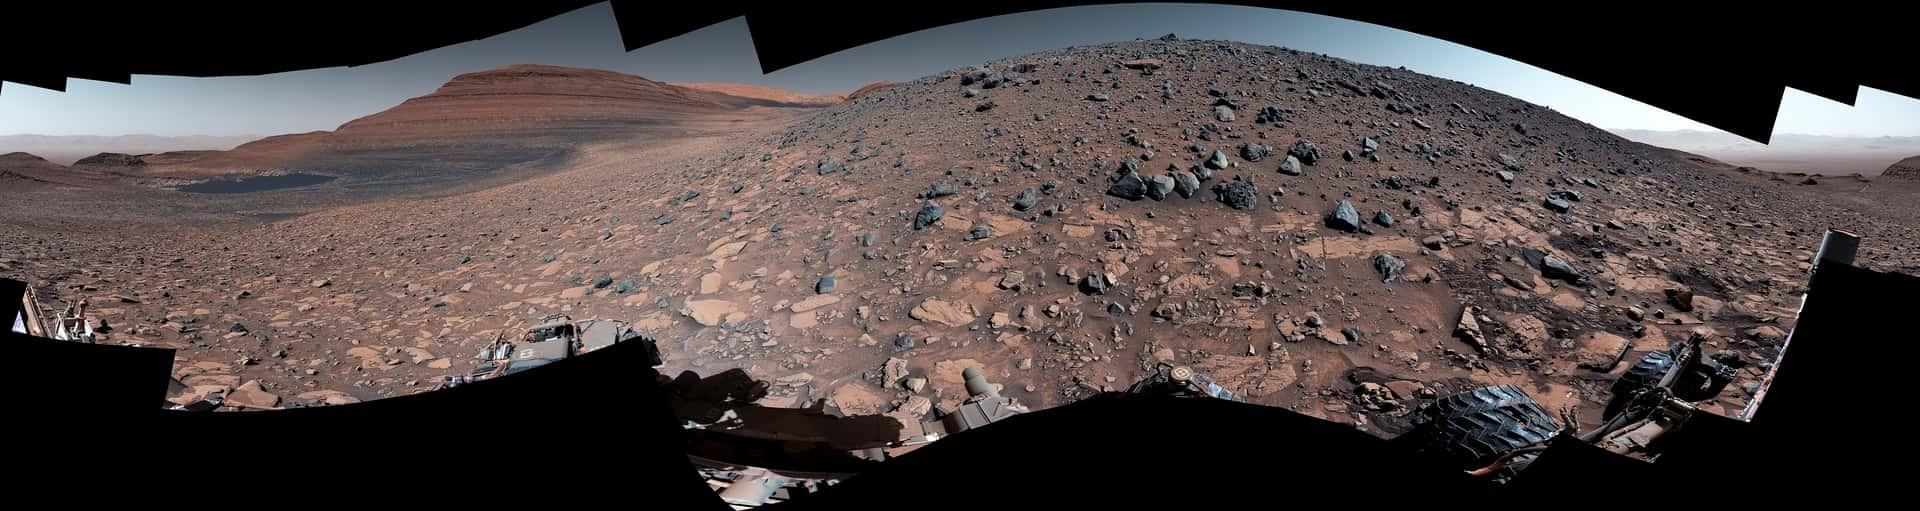 pia26019 - Mars: Für die Wissenschaftler der Curiosity-Mission ist es unvorstellbar, an diesem Berg von Geröll einfach "vorbeizugehen".